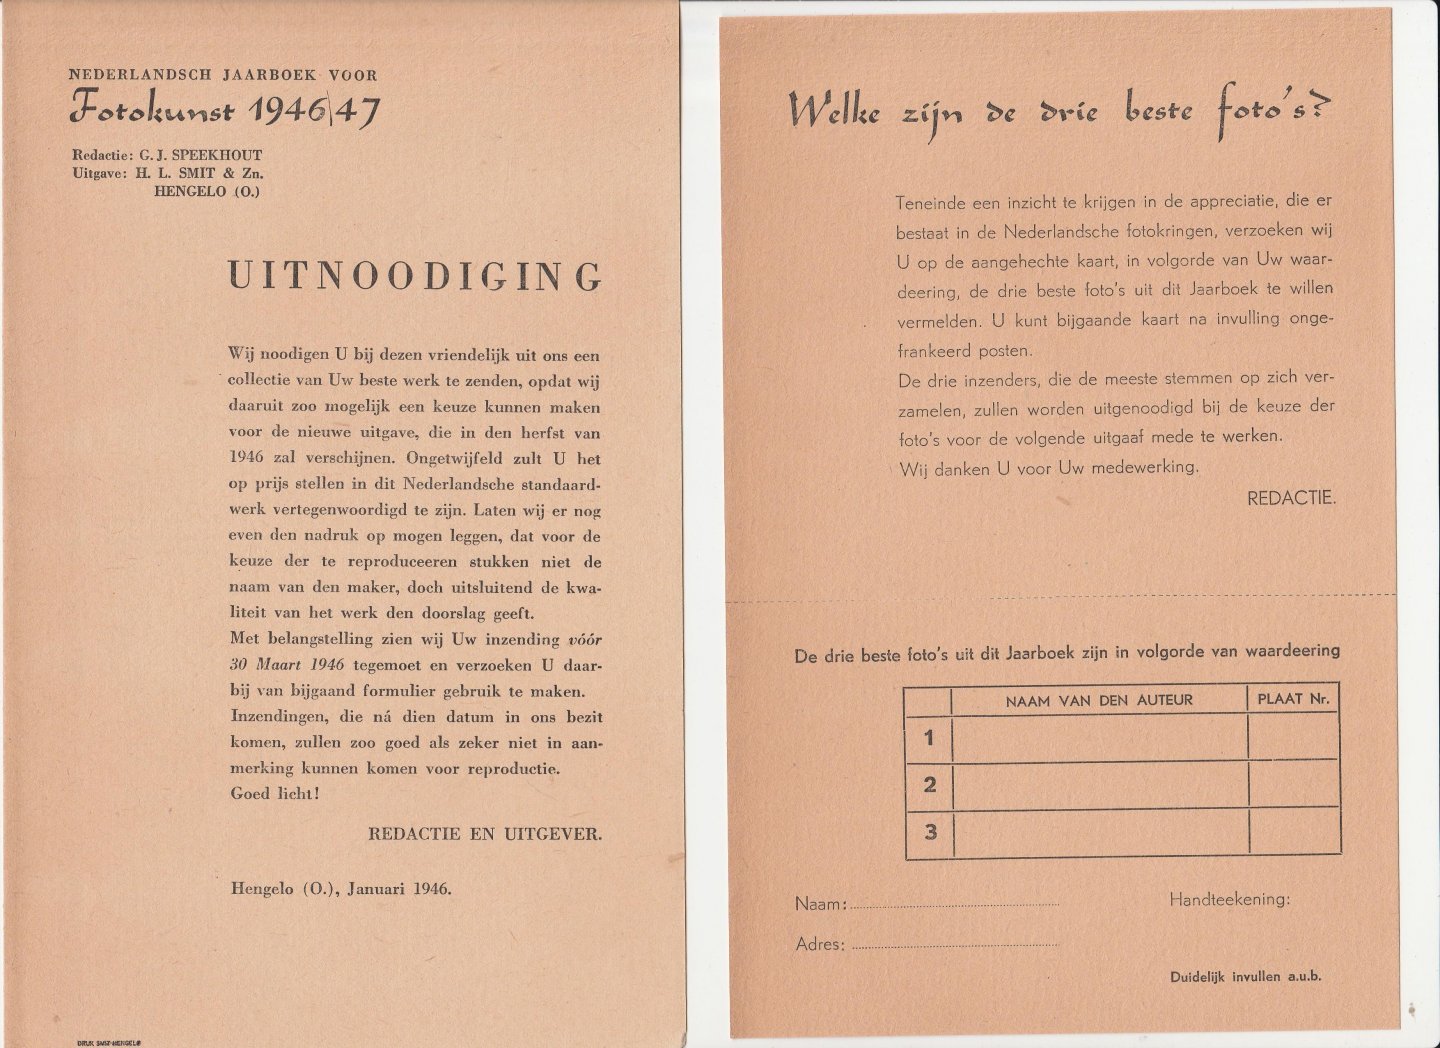 Speekhout, G.J. - Nederlandsch Jaarboek voor fotokunst 1944/46